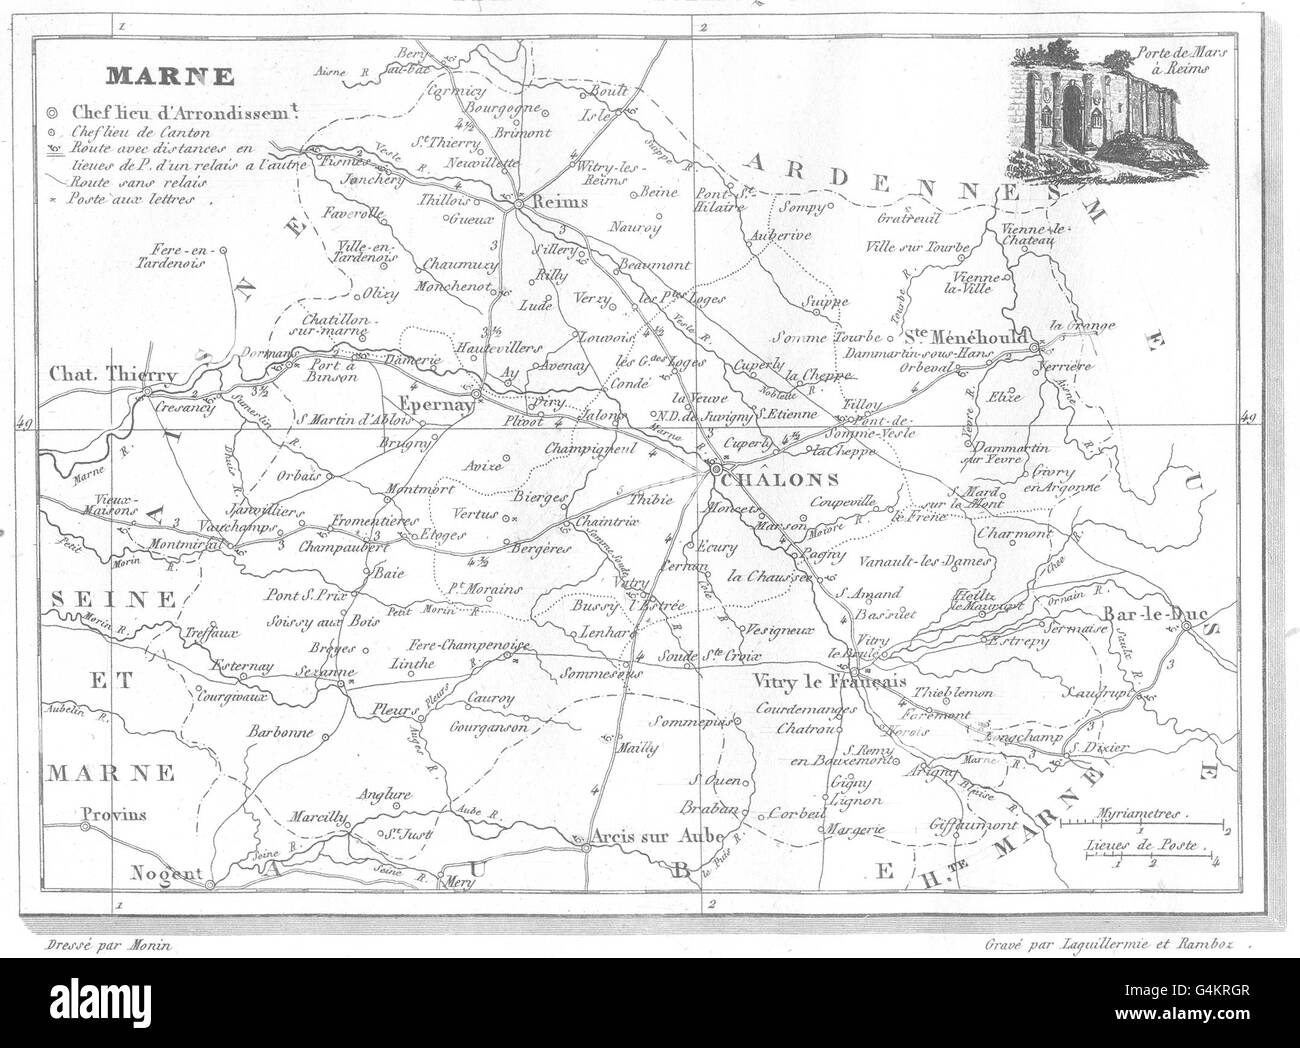 MARNE: Département de la Marne, 1835 antique map Stock Photo - Alamy